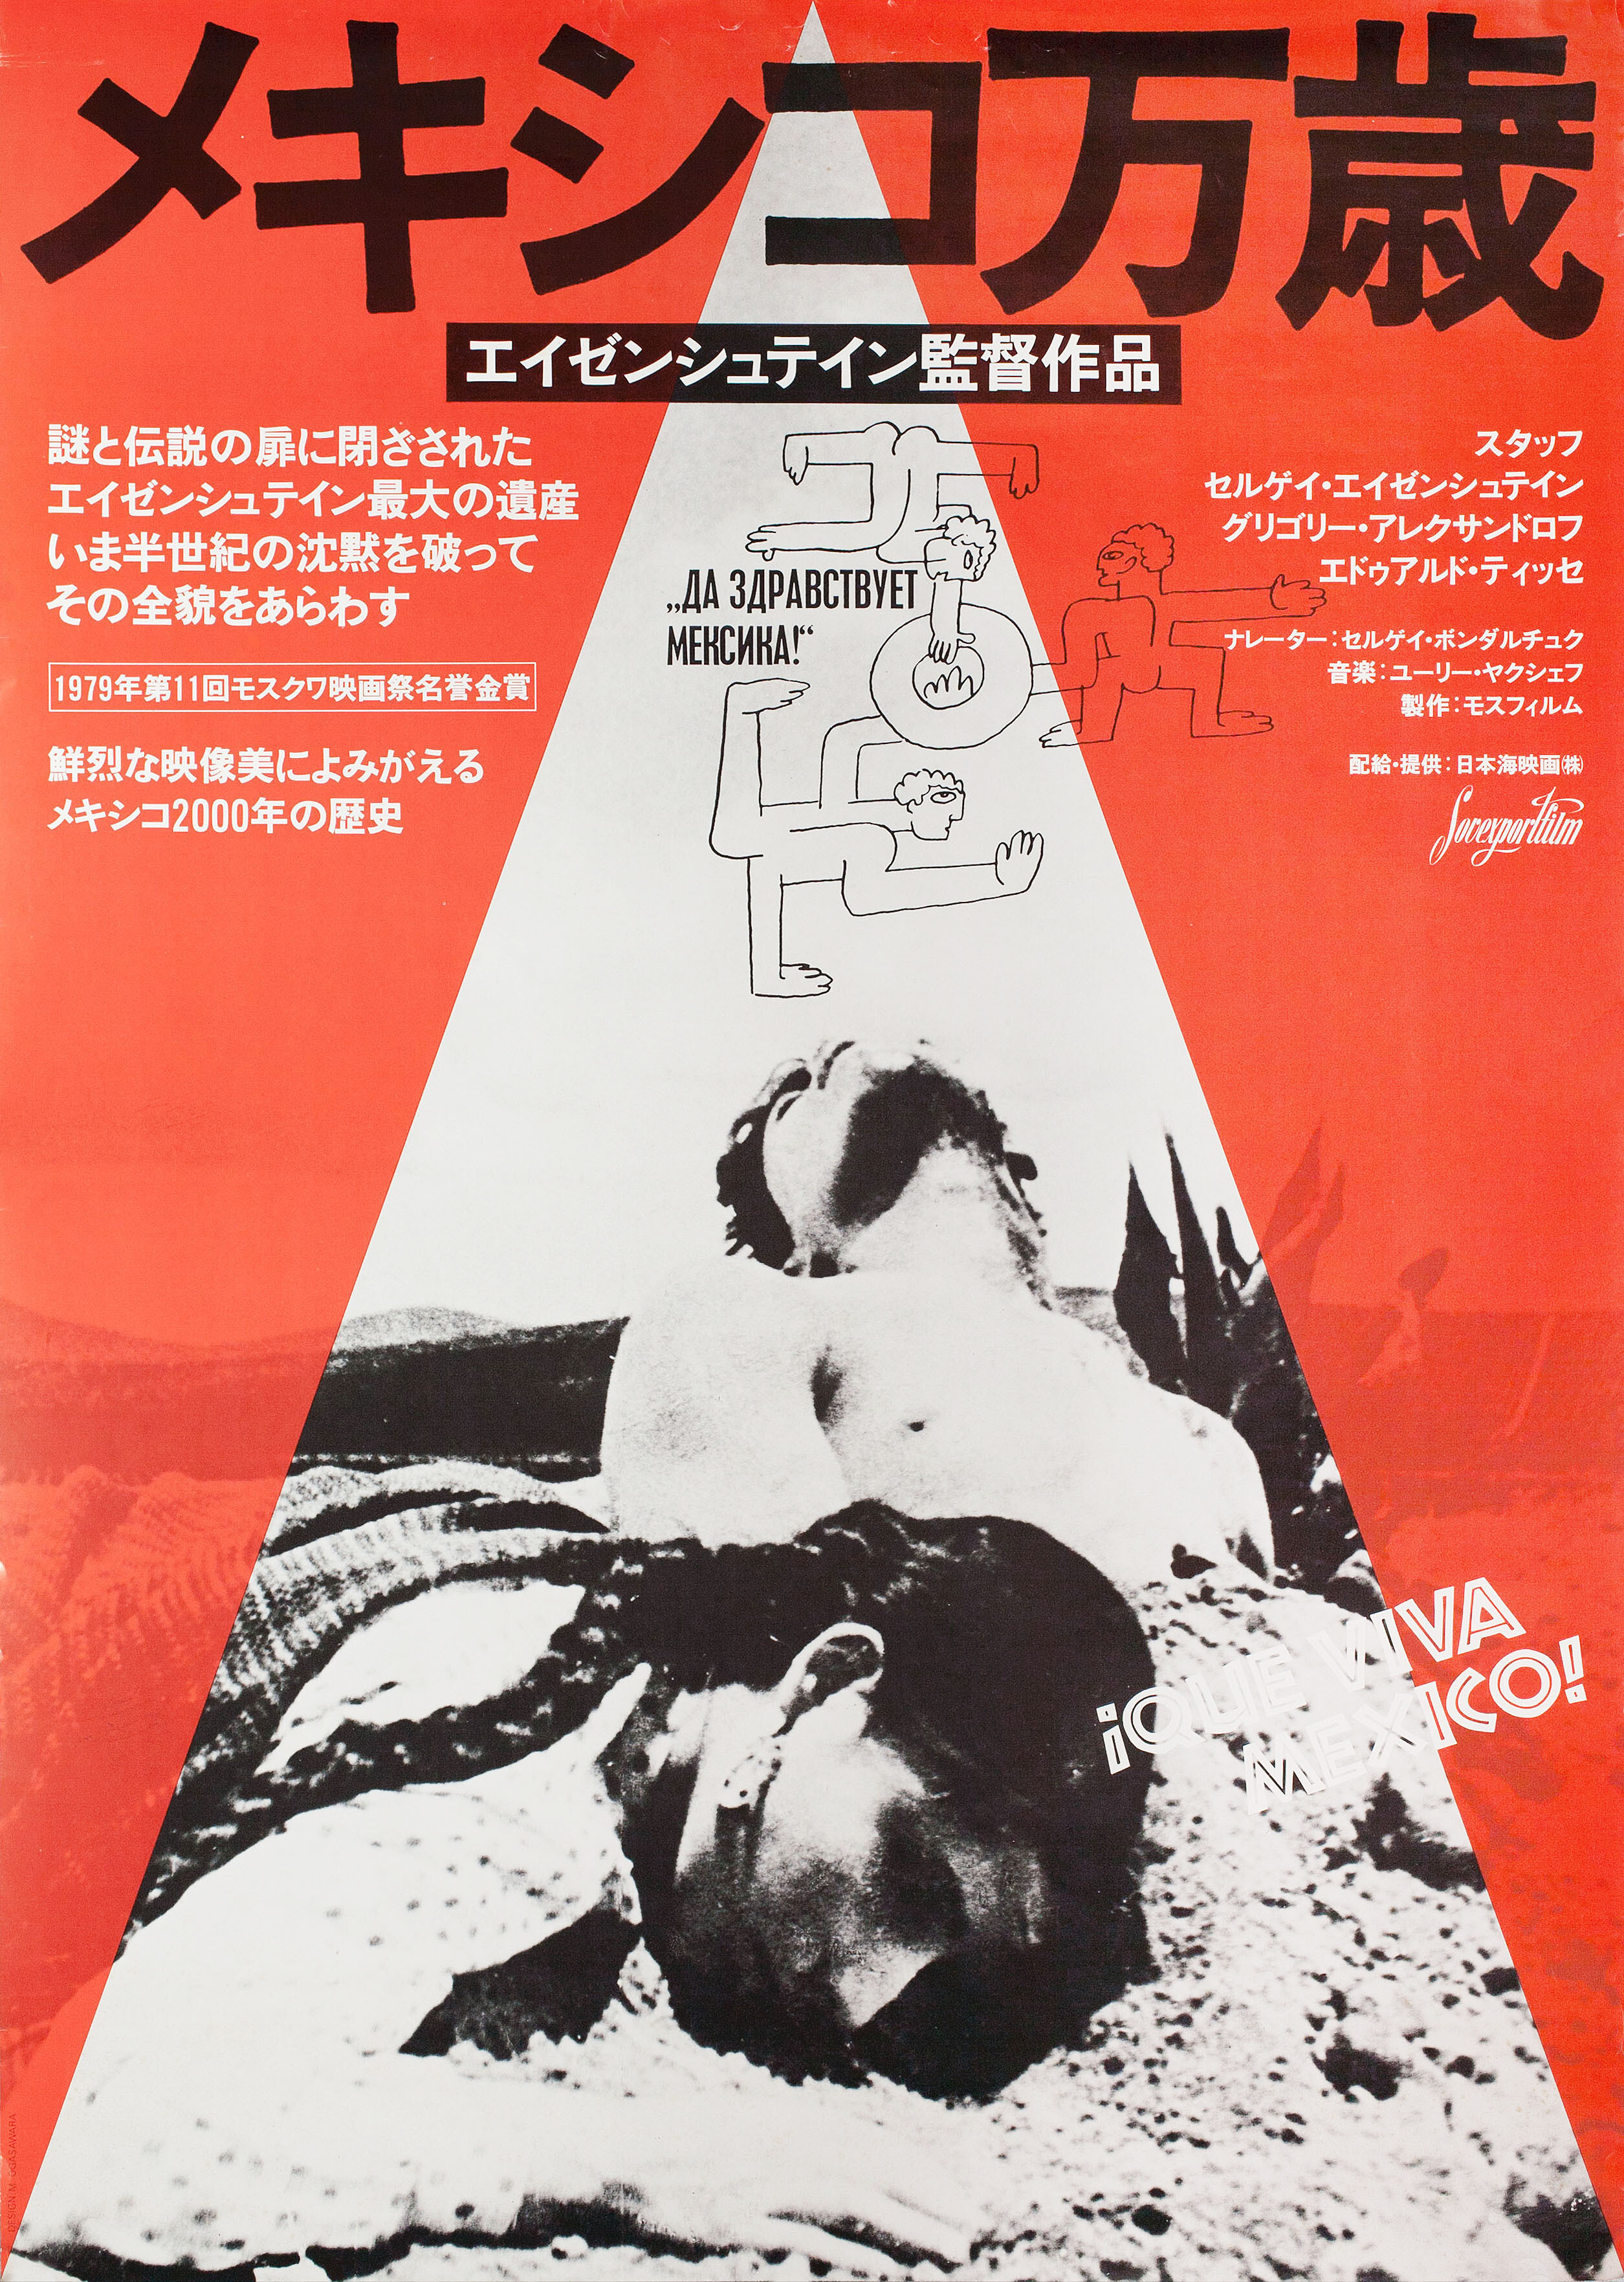 Да здравствует Мексика! (режиссёр Сергей Михайлович Эйзенштейн, 1979), японский постер к фильму, автор Масакацу Огасавара, 1979 год